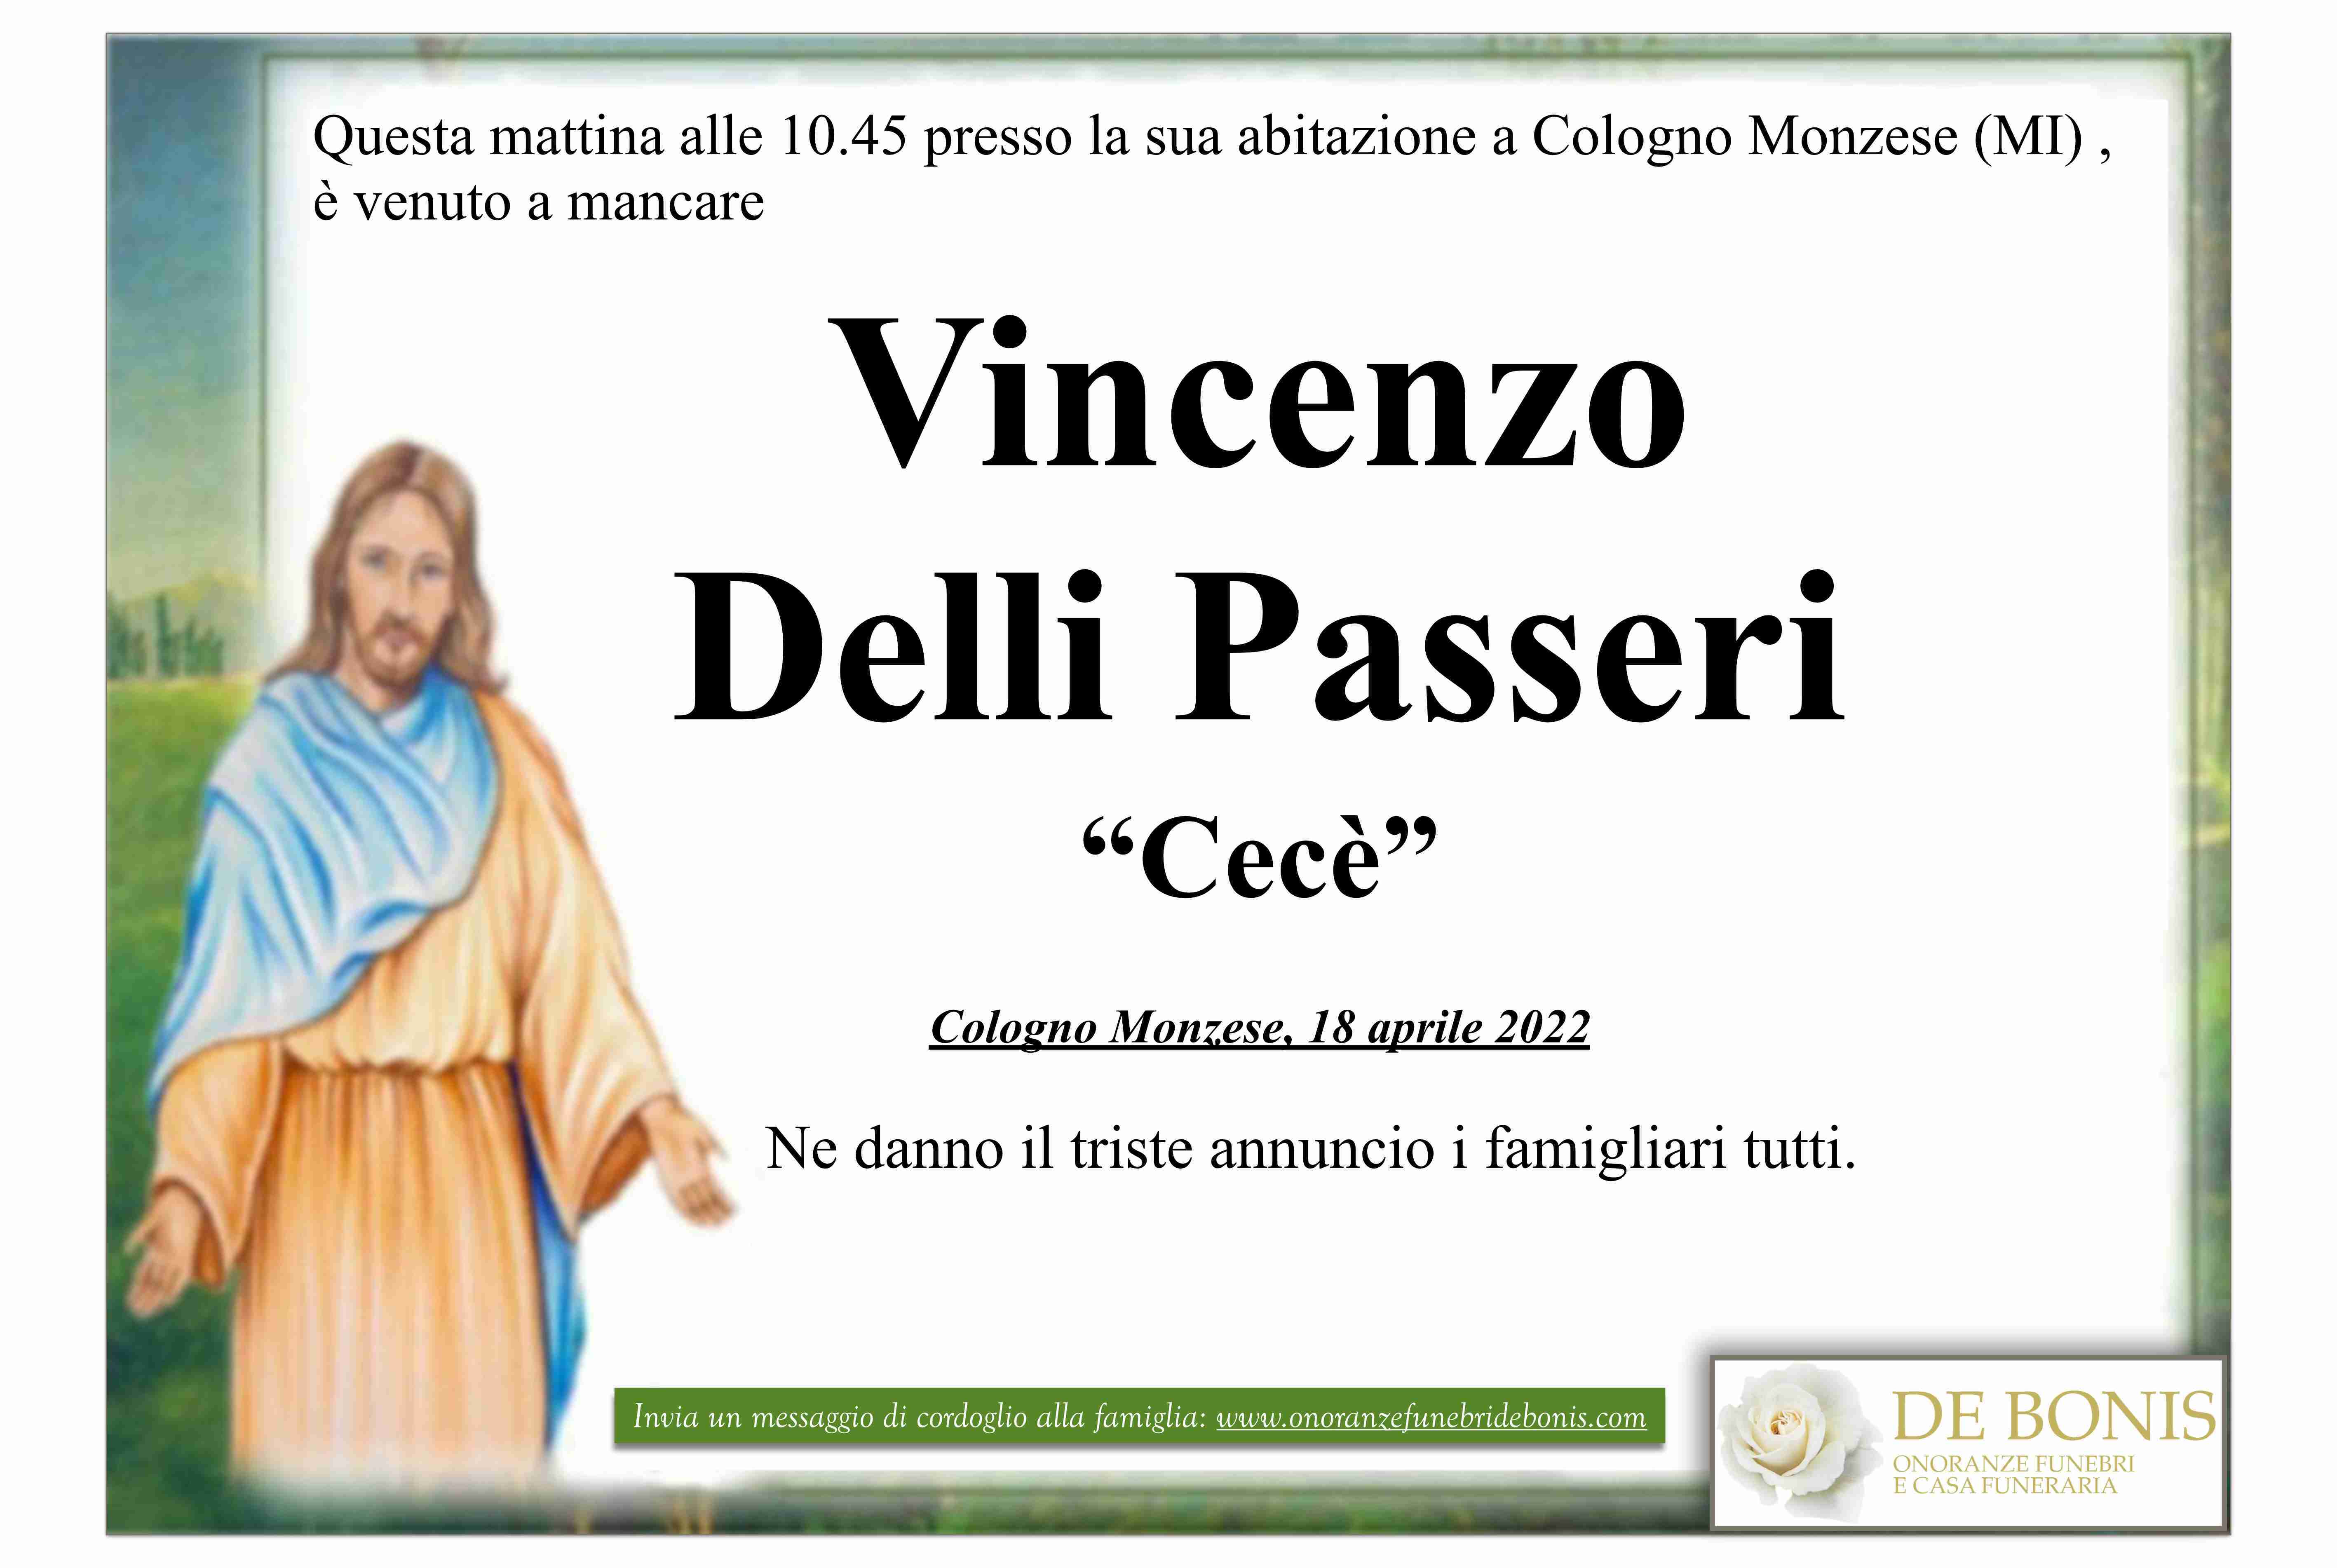 Vincenzo Delli Passeri